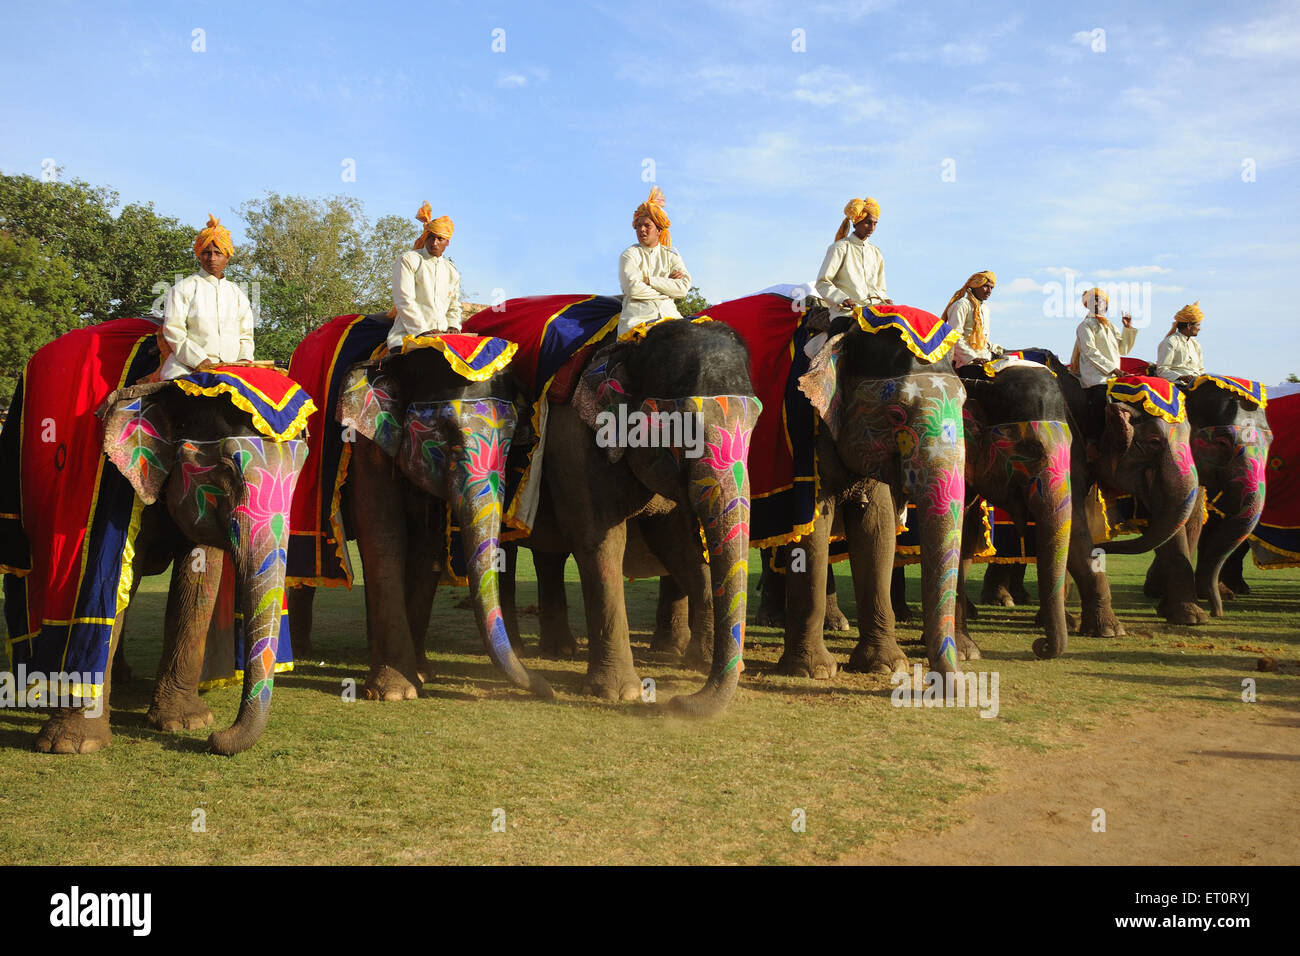 Mahouts on elephant ; Jaipur ; Rajasthan ; India Stock Photo